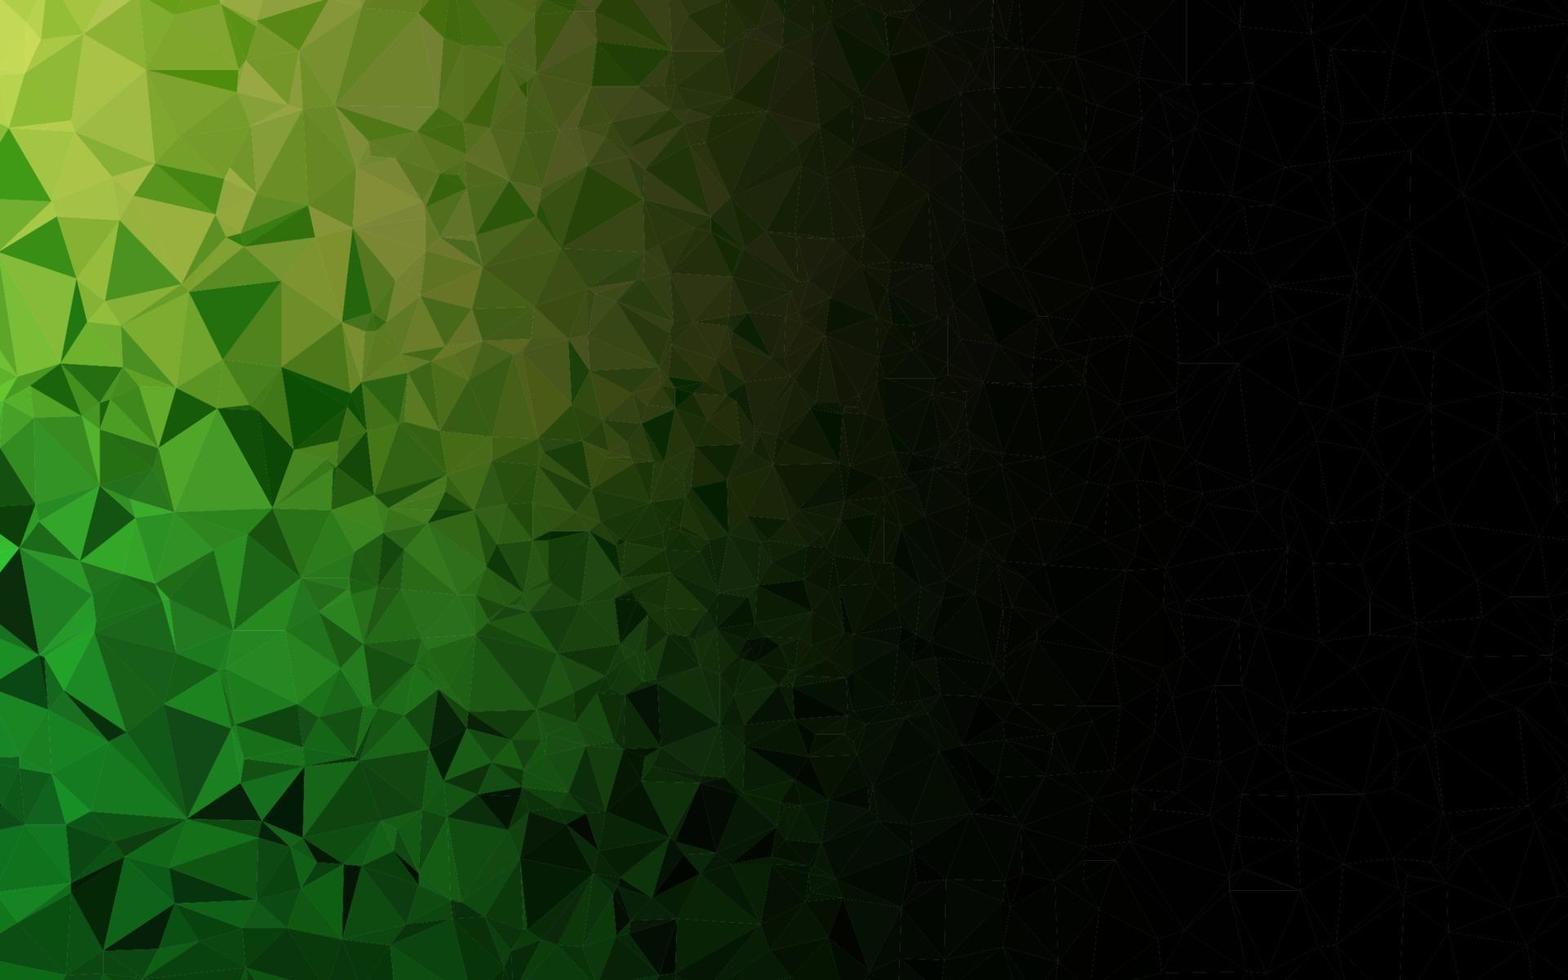 struttura poligonale astratta di vettore verde chiaro.